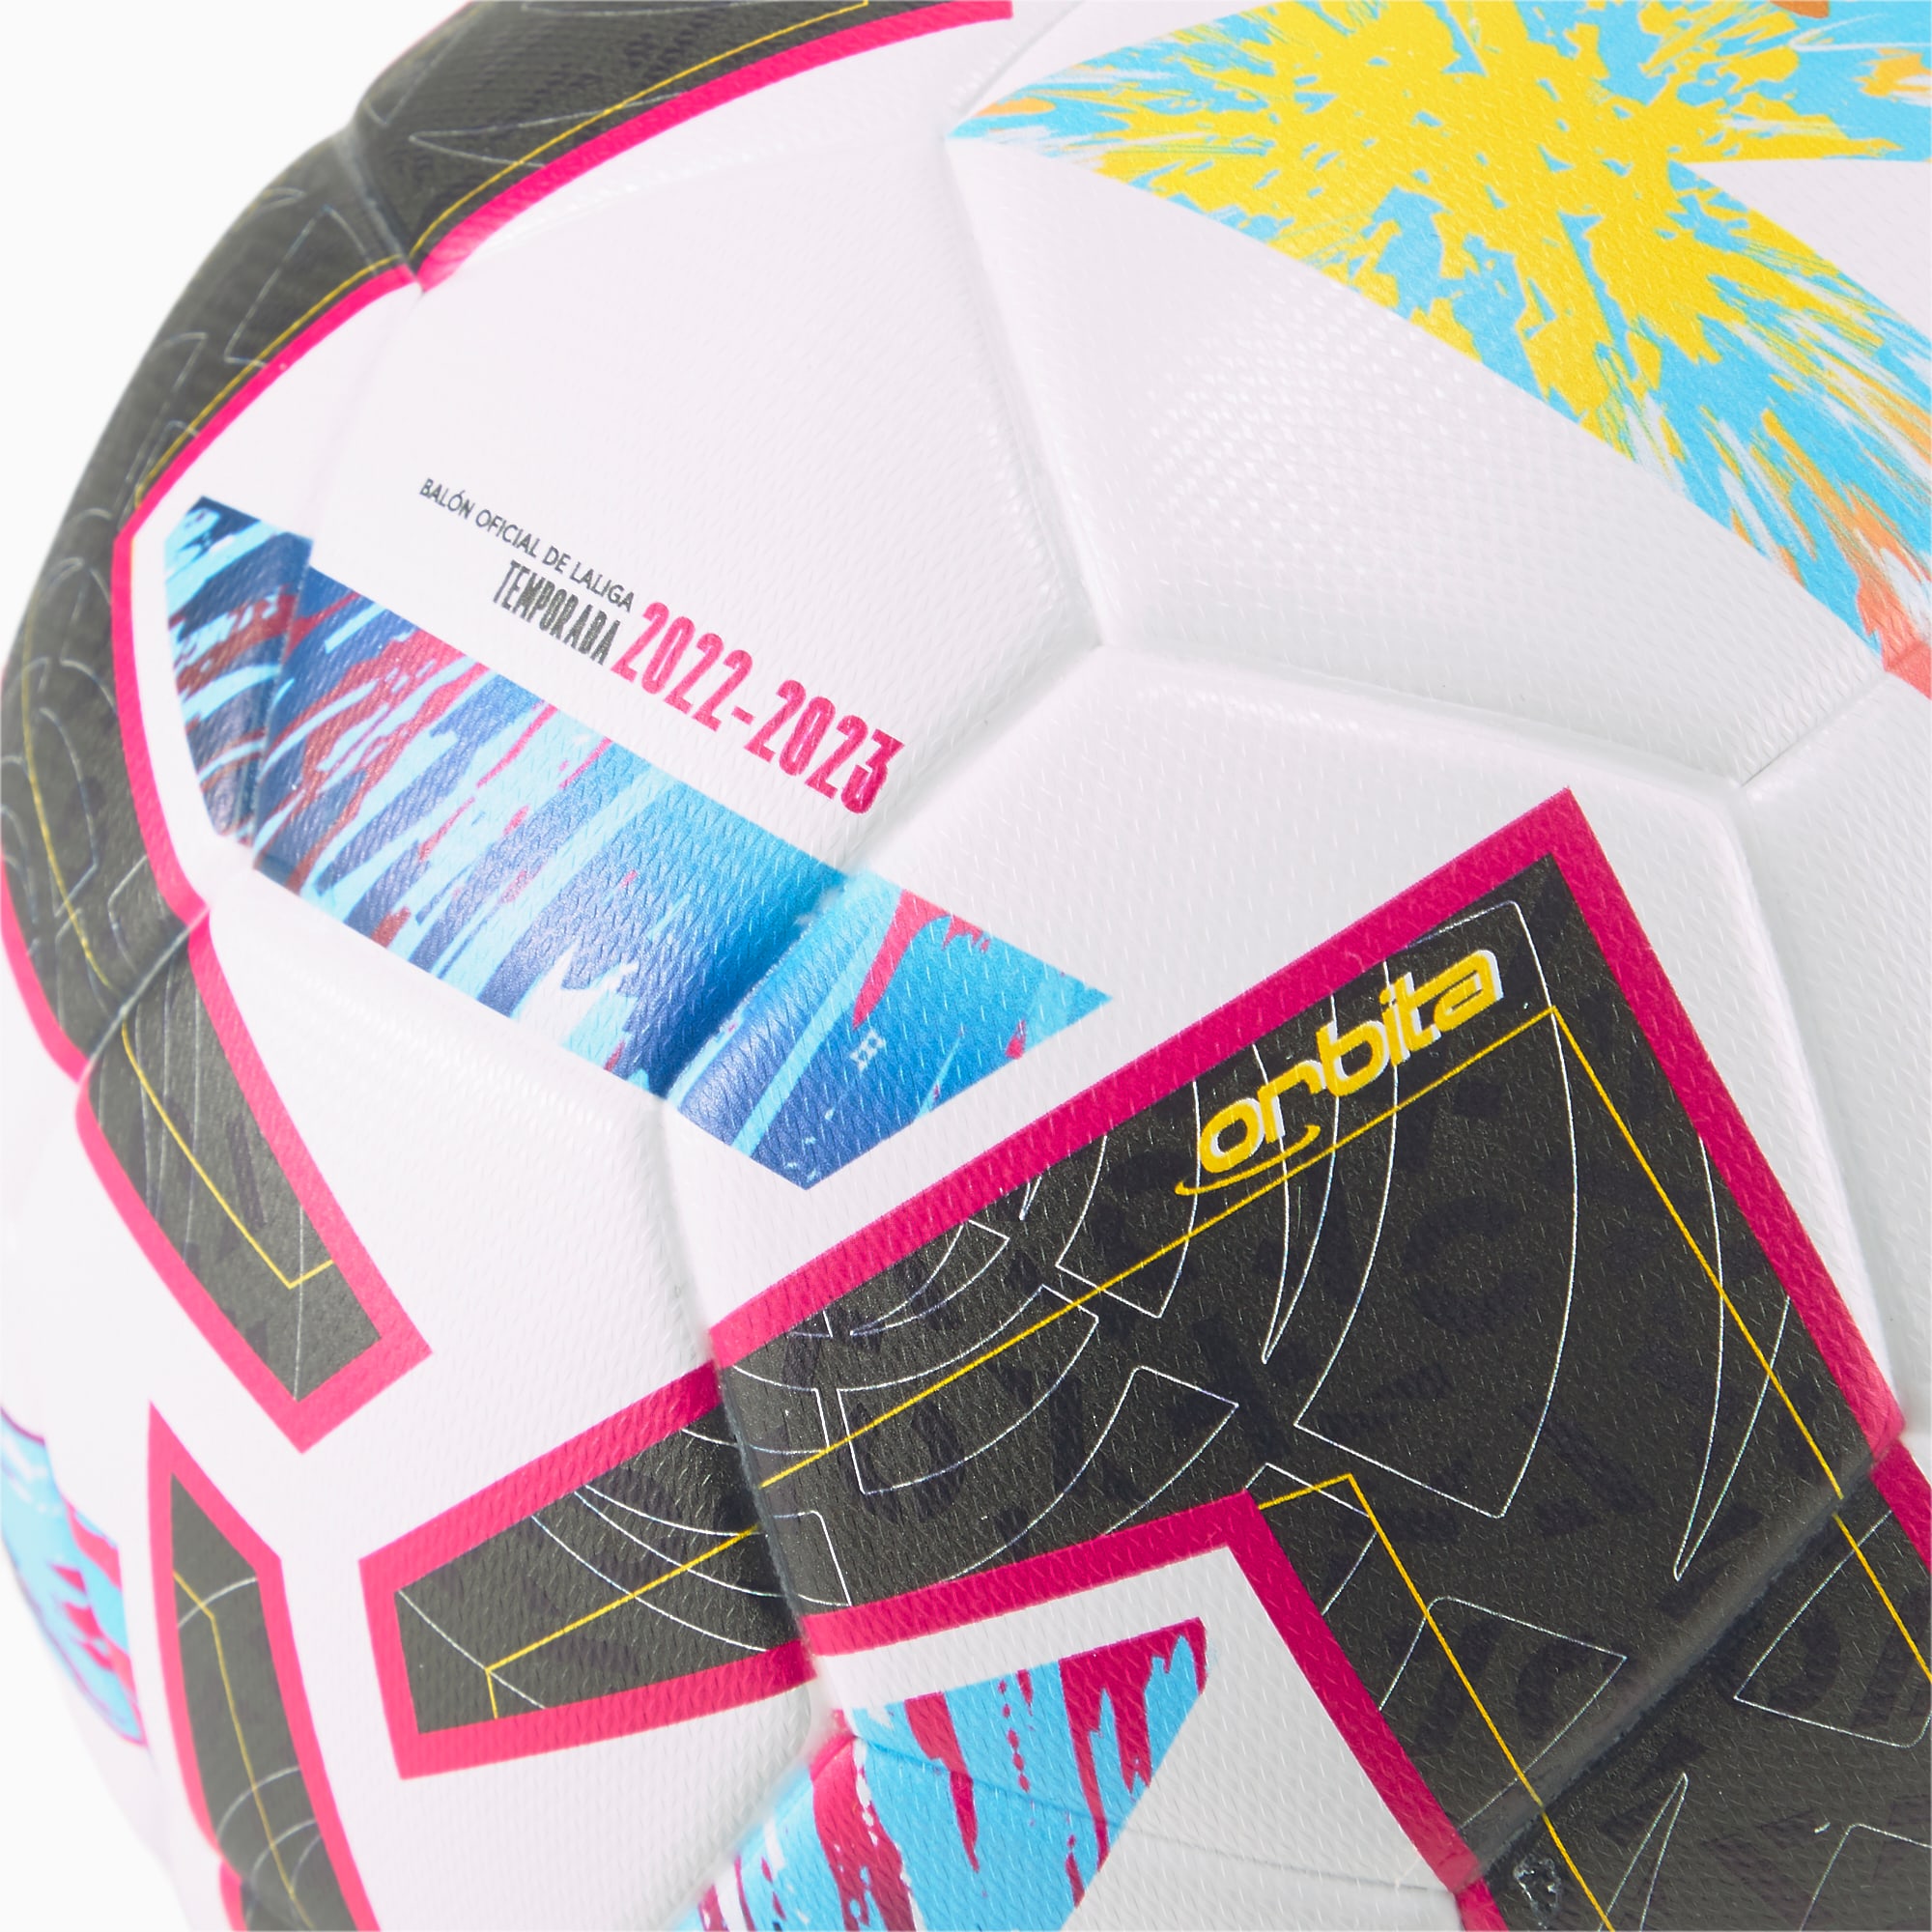 Orbita LaLiga 1 Pro Soccer Ball - Soccer90